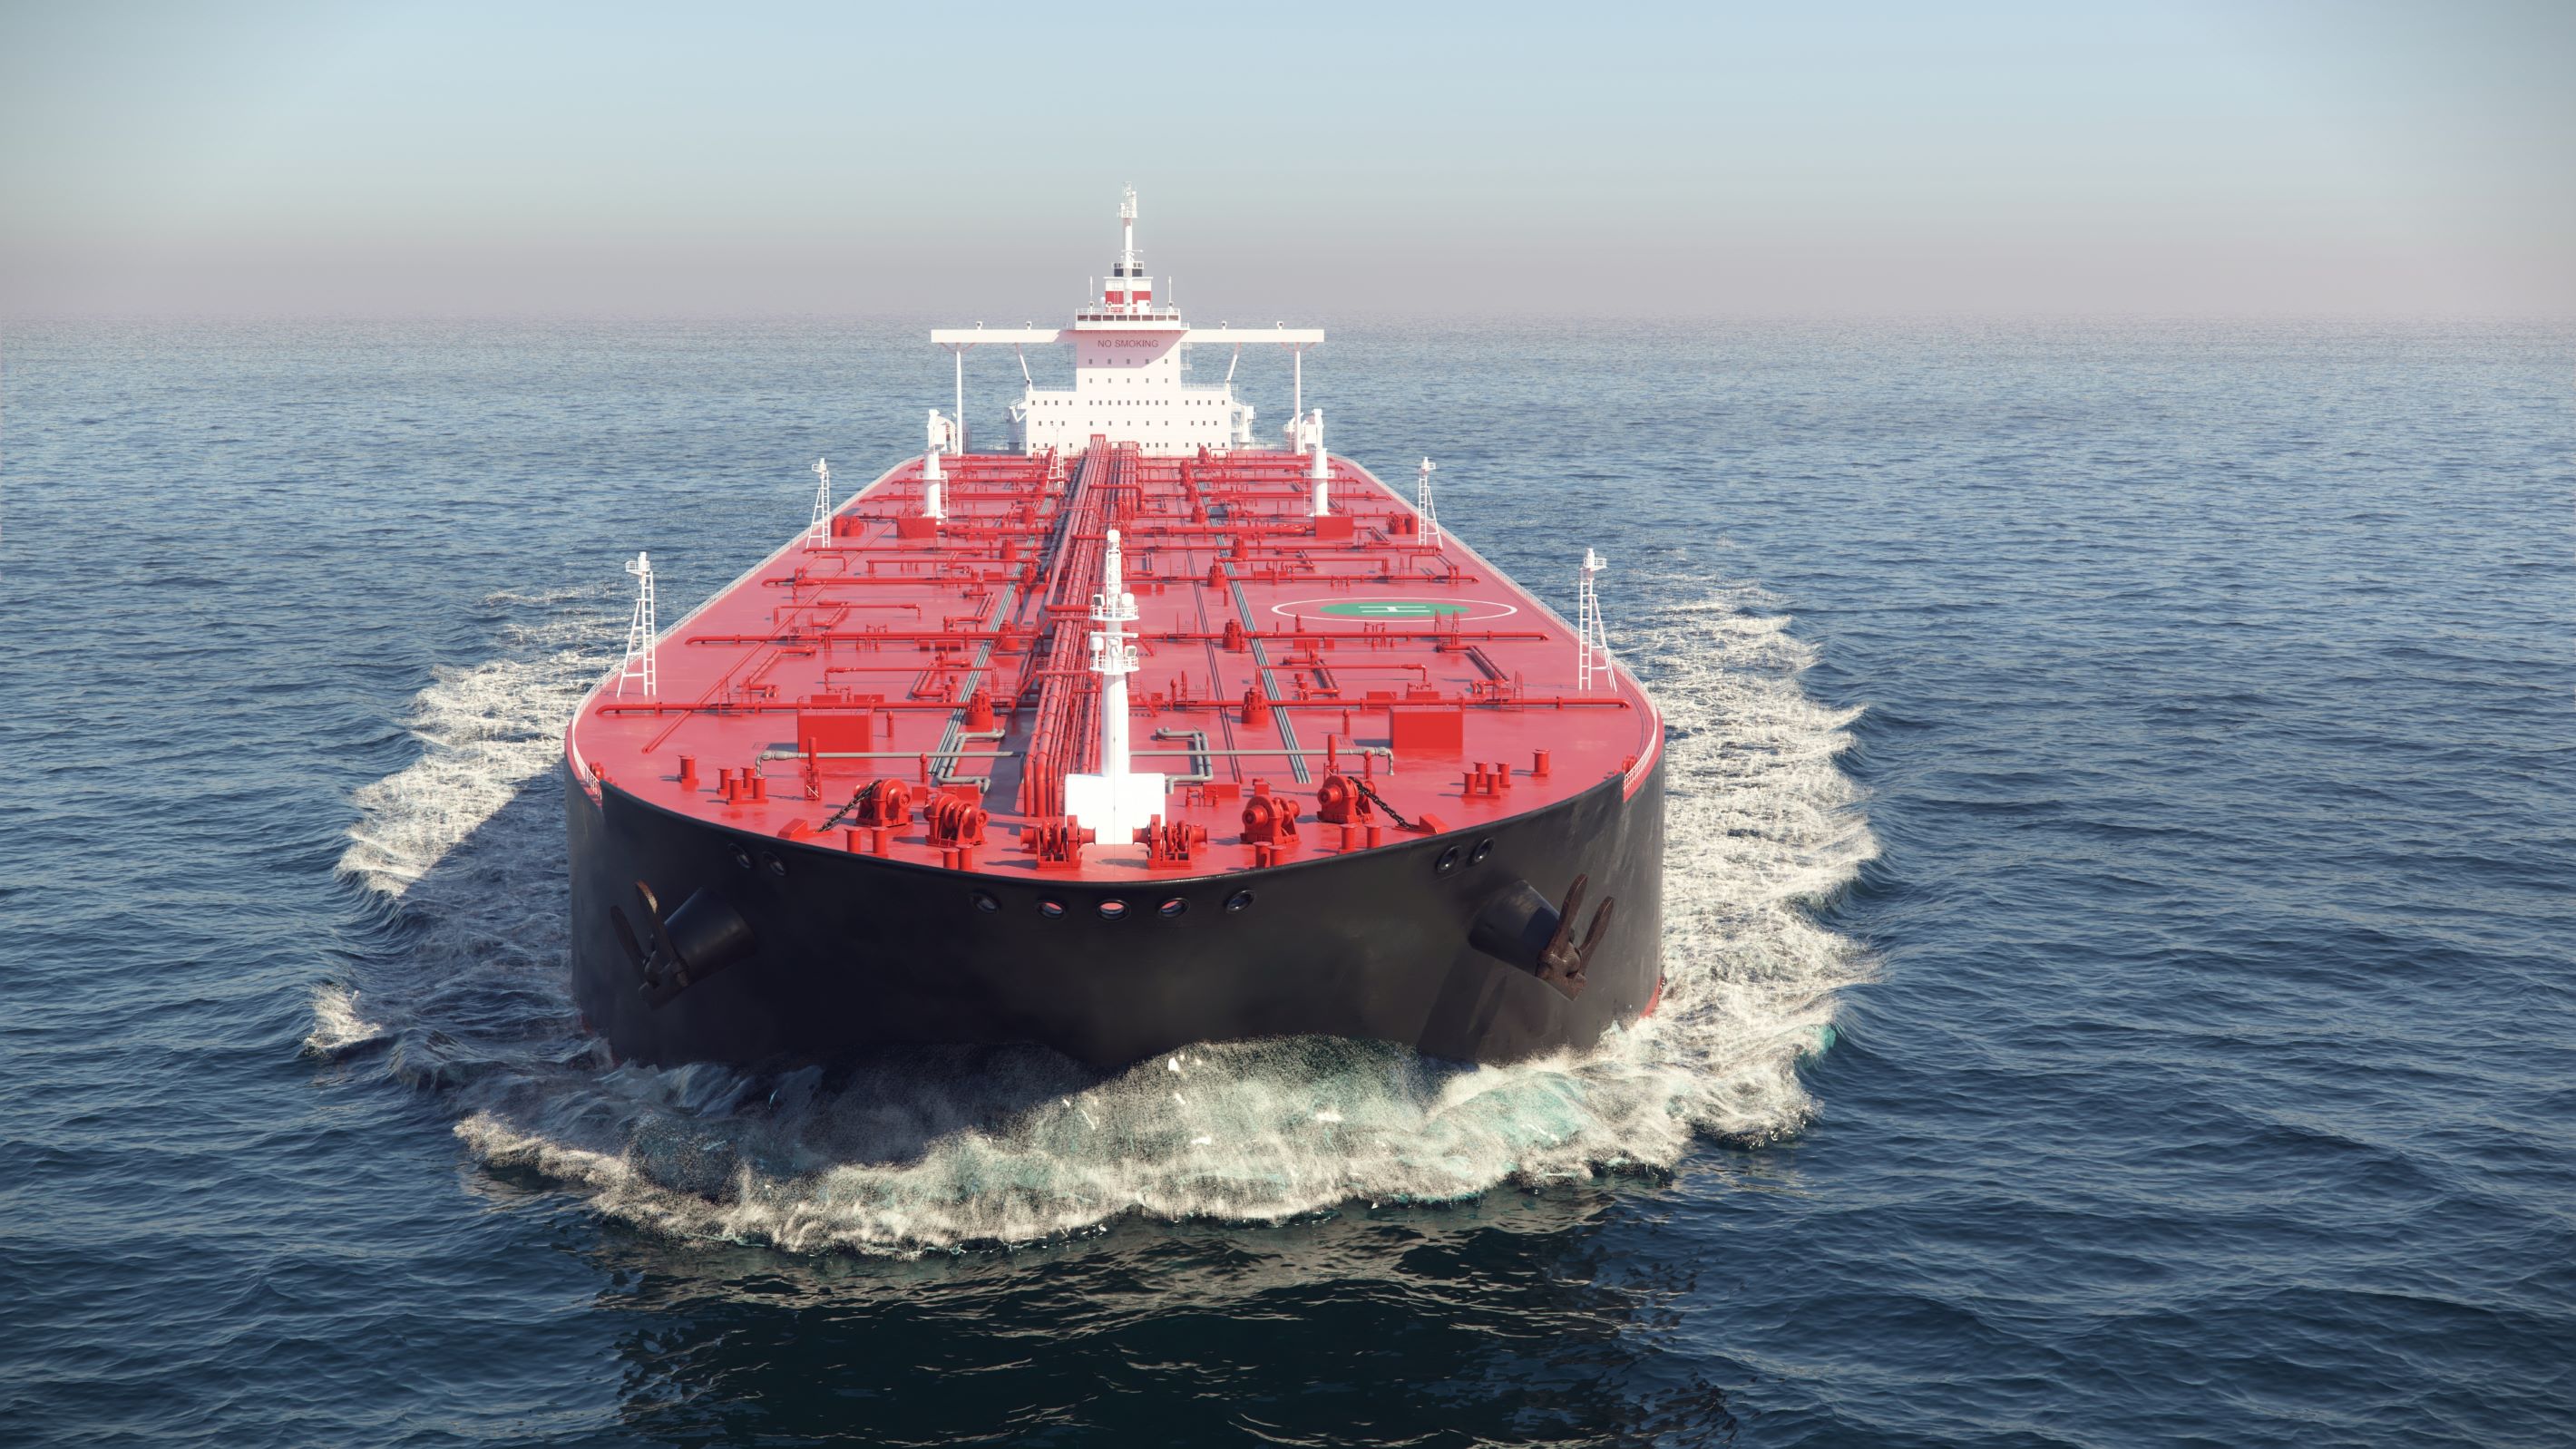 Oil tanker - global market of oil faces sanctions